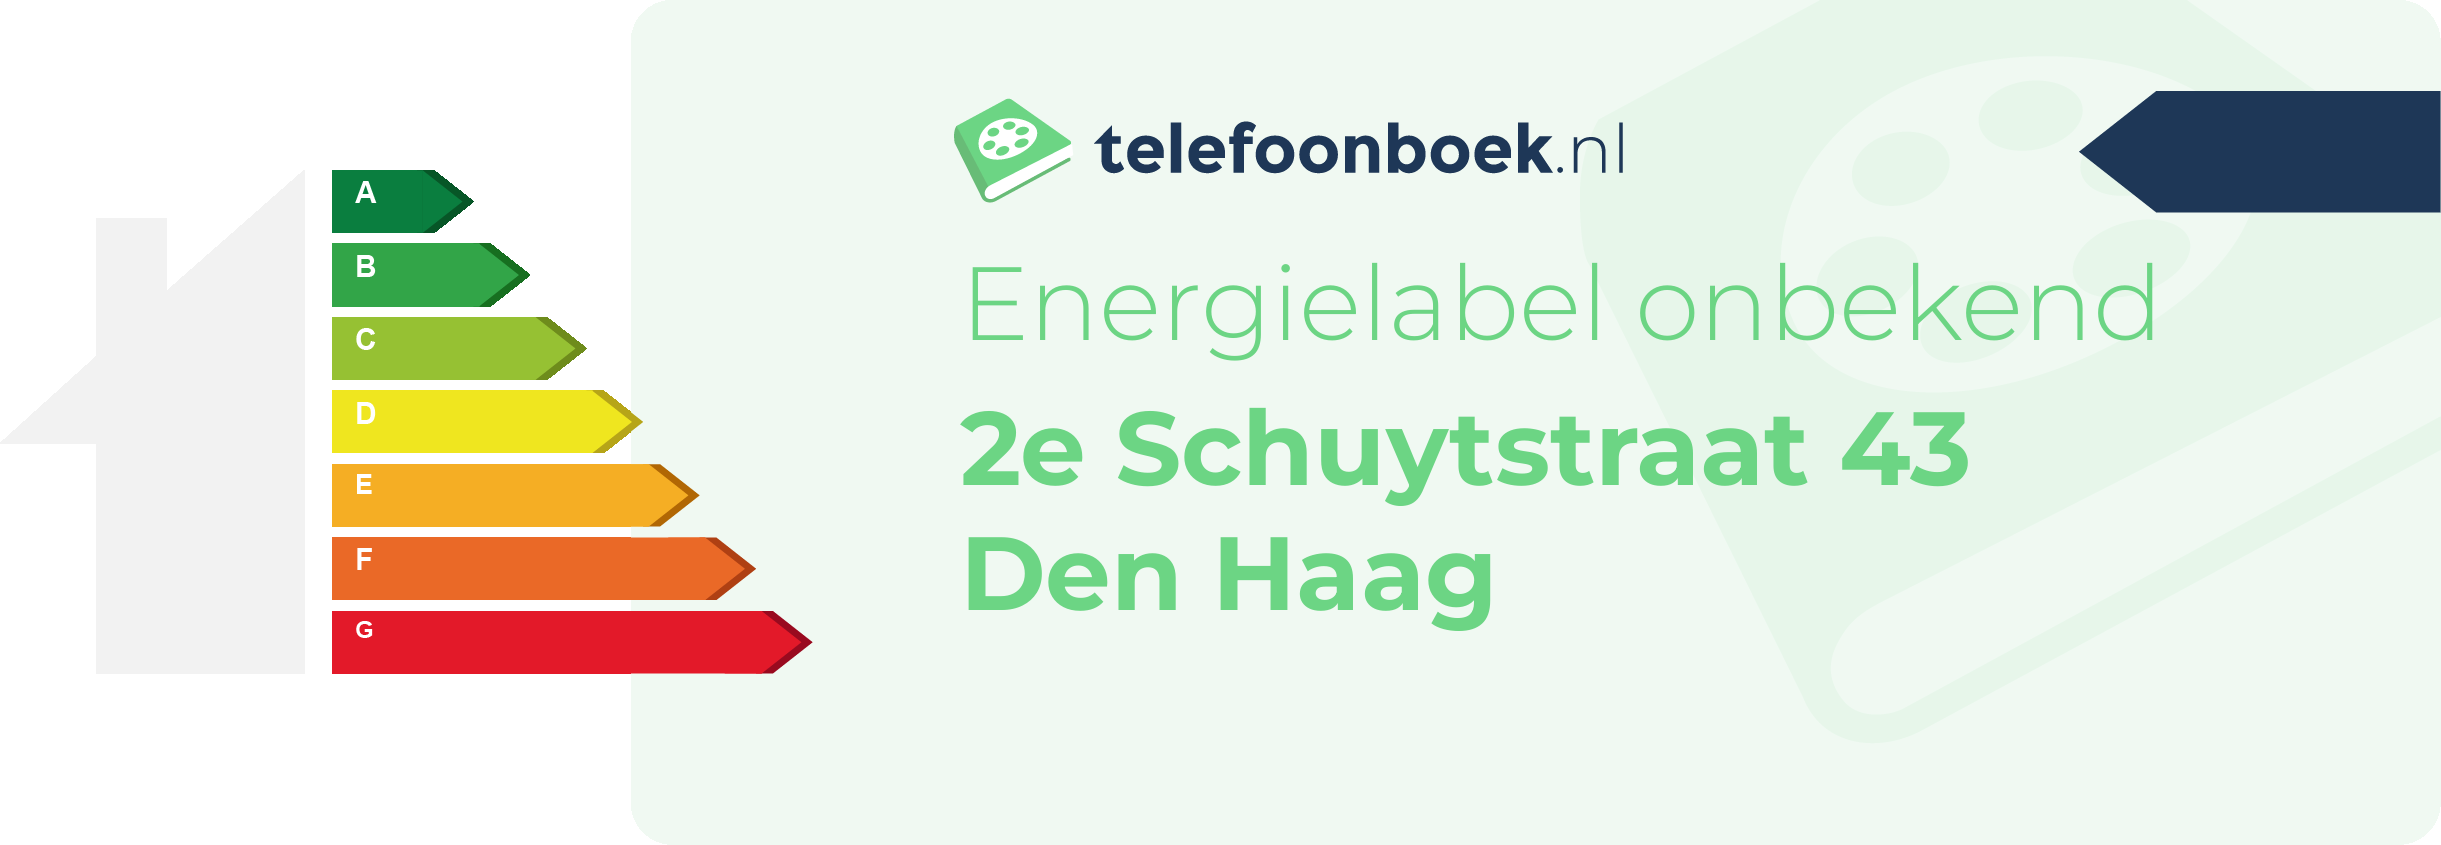 Energielabel 2e Schuytstraat 43 Den Haag